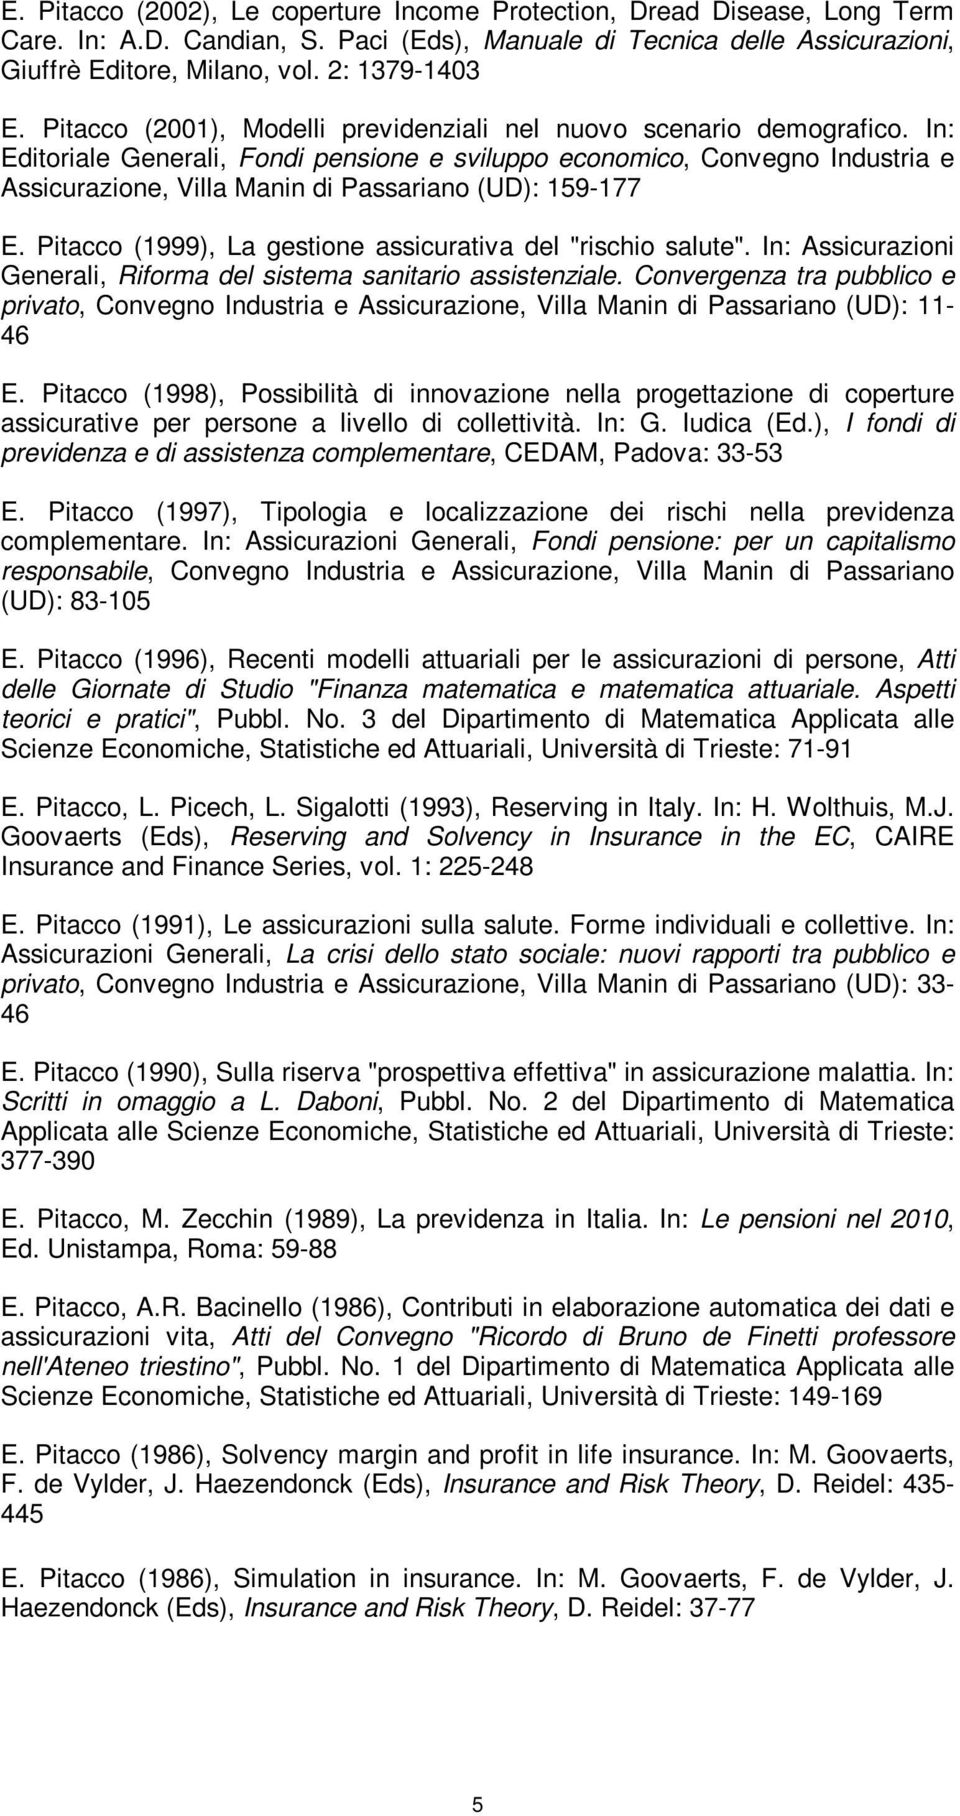 In: Editoriale Generali, Fondi pensione e sviluppo economico, Convegno Industria e Assicurazione, Villa Manin di Passariano (UD): 159-177 E.